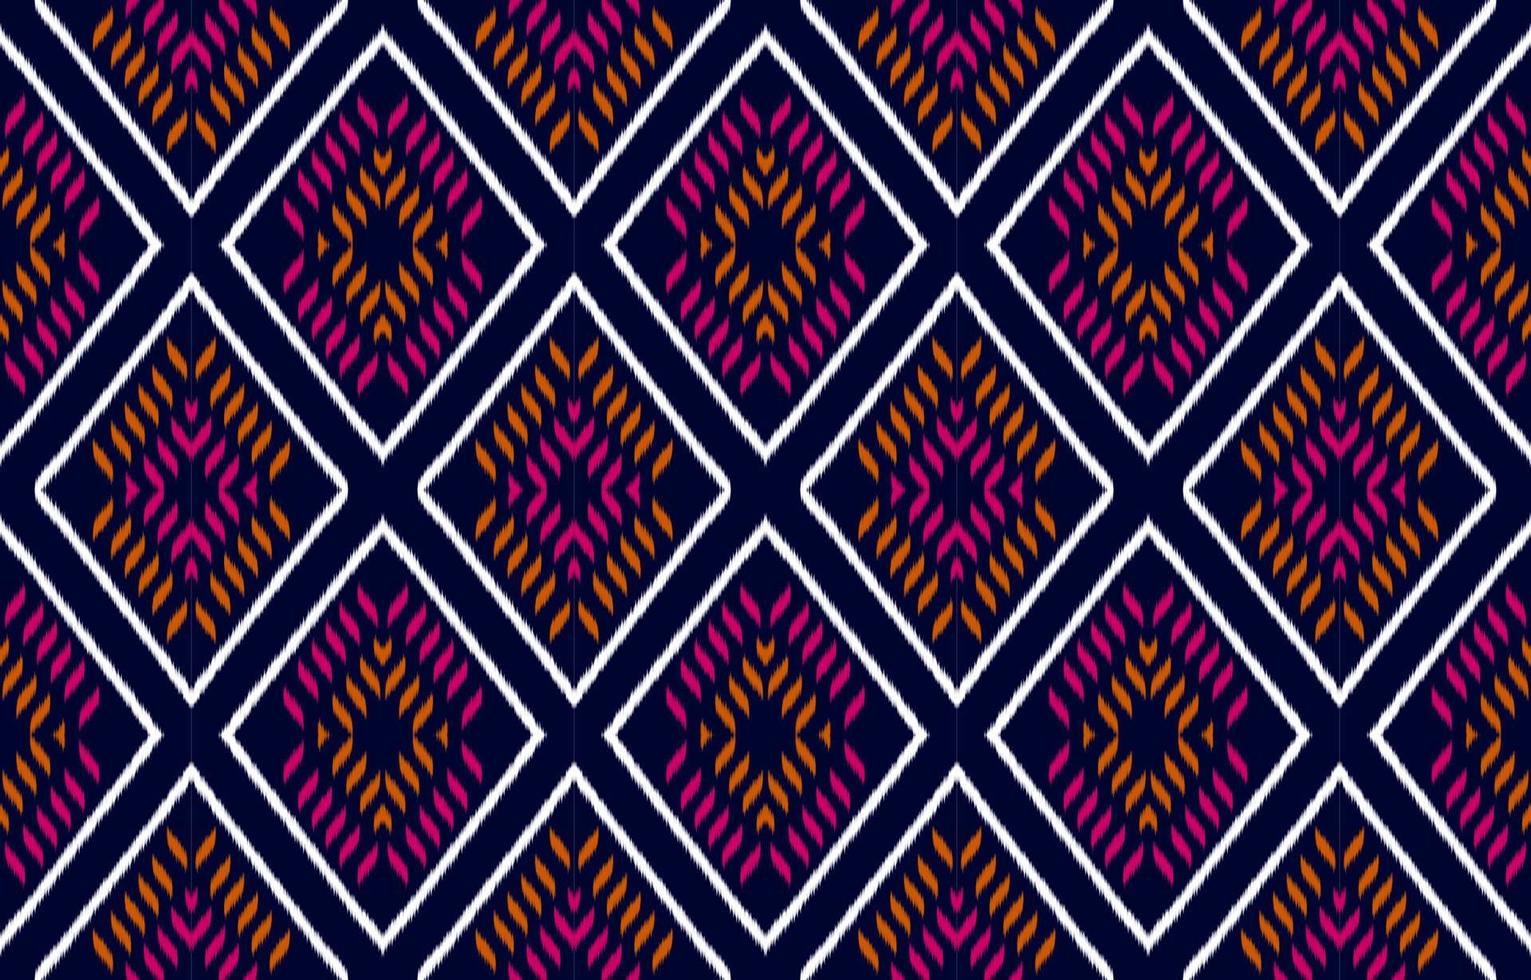 tissu ikat art. motif géométrique sans couture ethnique en tribal. style américain, mexicain. vecteur